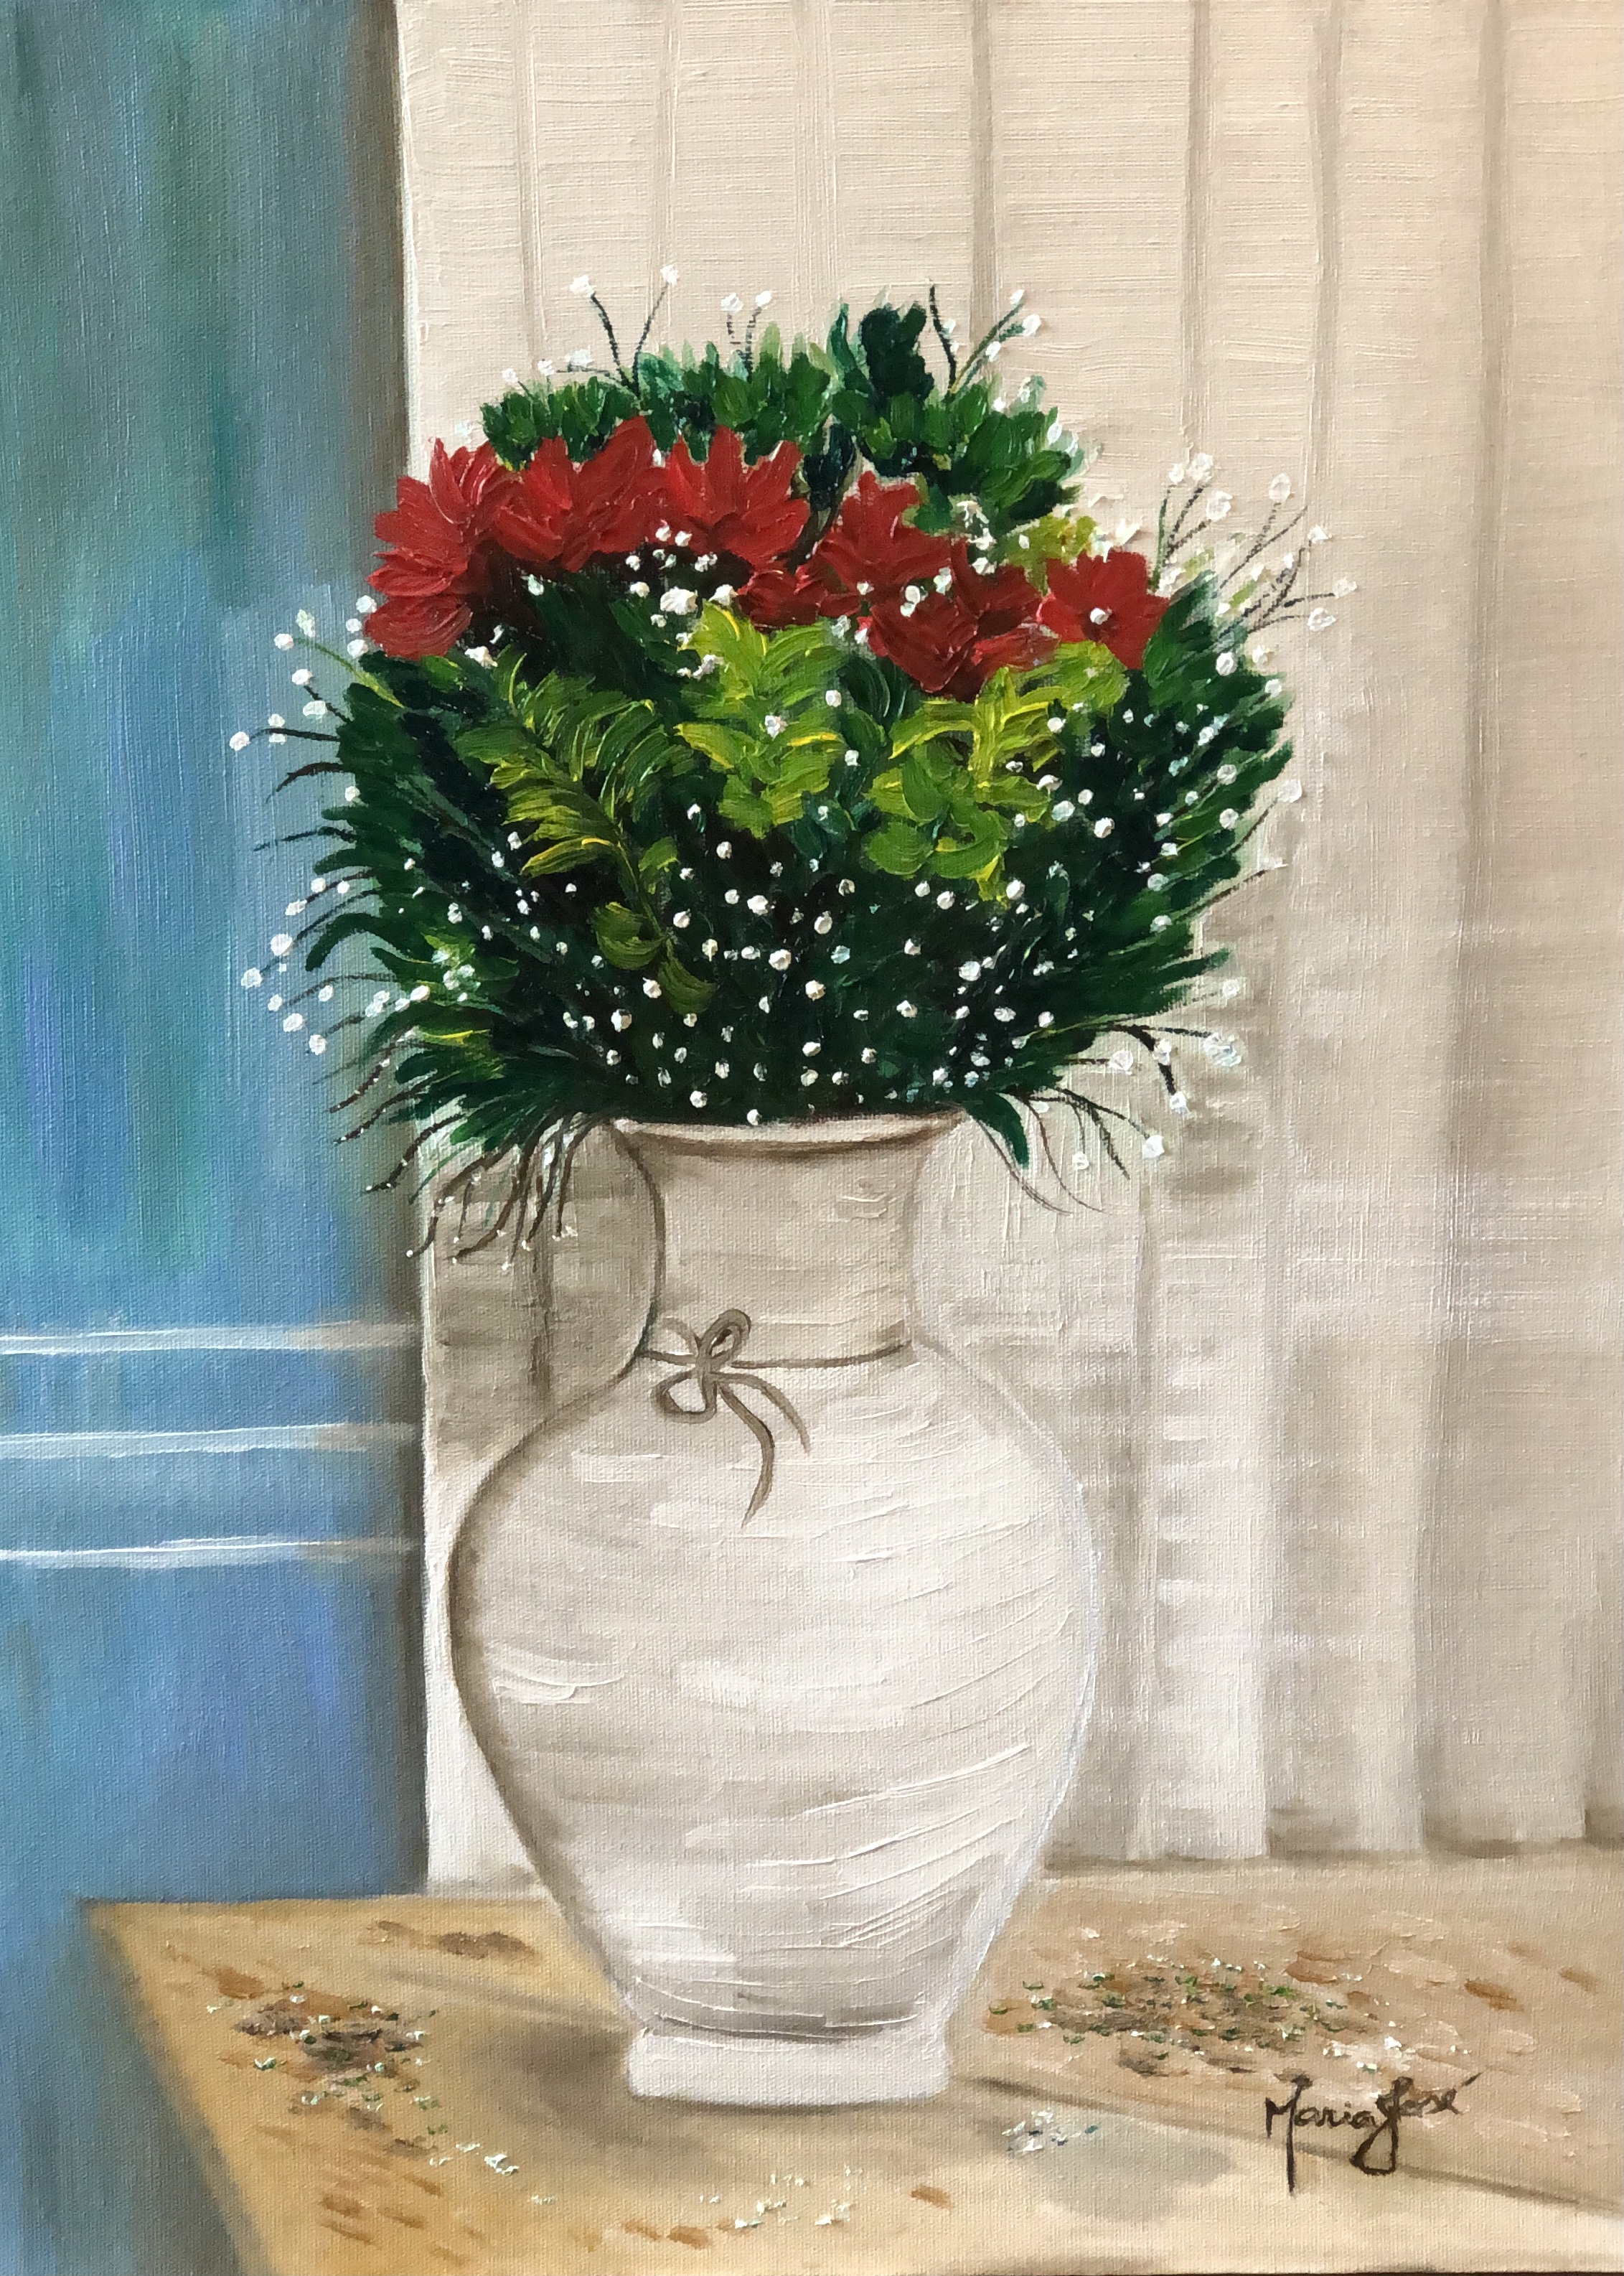 Título da Obra : Vaso de flores  _ Paris  Técnica: óleo sobre tela; Dimensões:  30 X 40 cm ;  Local/ Ano de criação: Rio de Janeiro – Brasil- setembro/2021